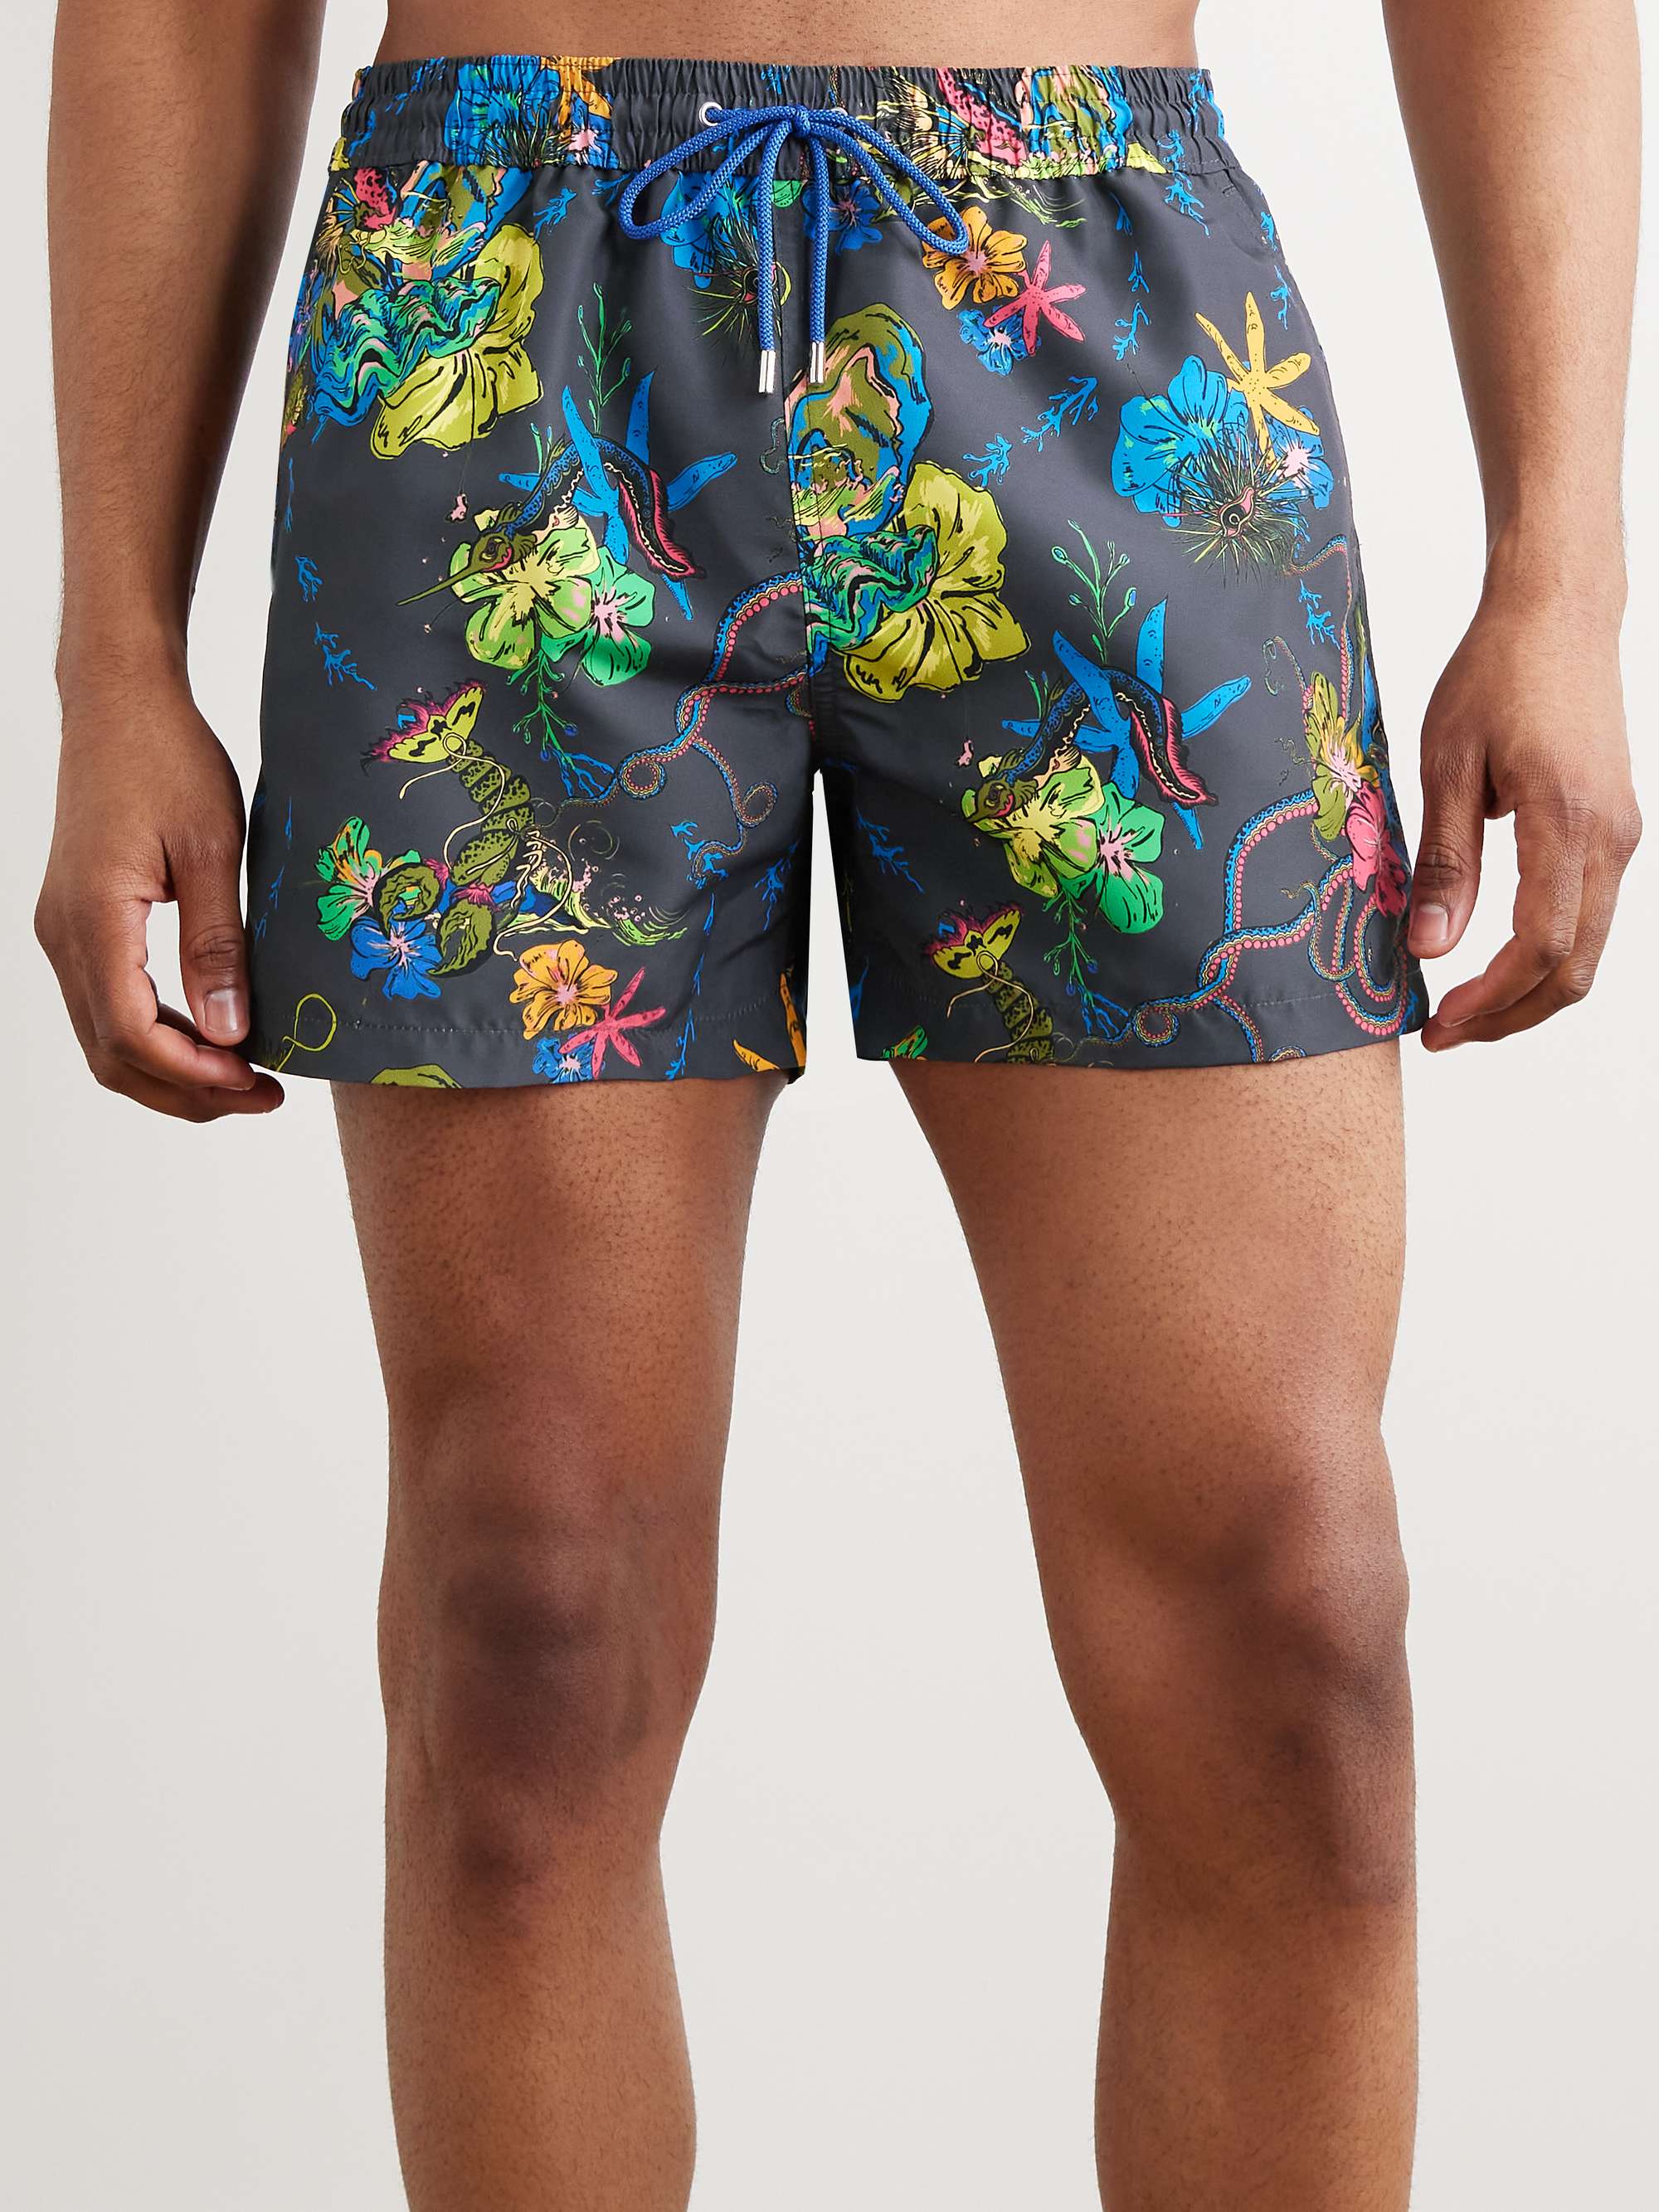 PAUL SMITH Kraken Slim-Fit Short-Length Printed Recycled Swim Shorts for  Men | MR PORTER